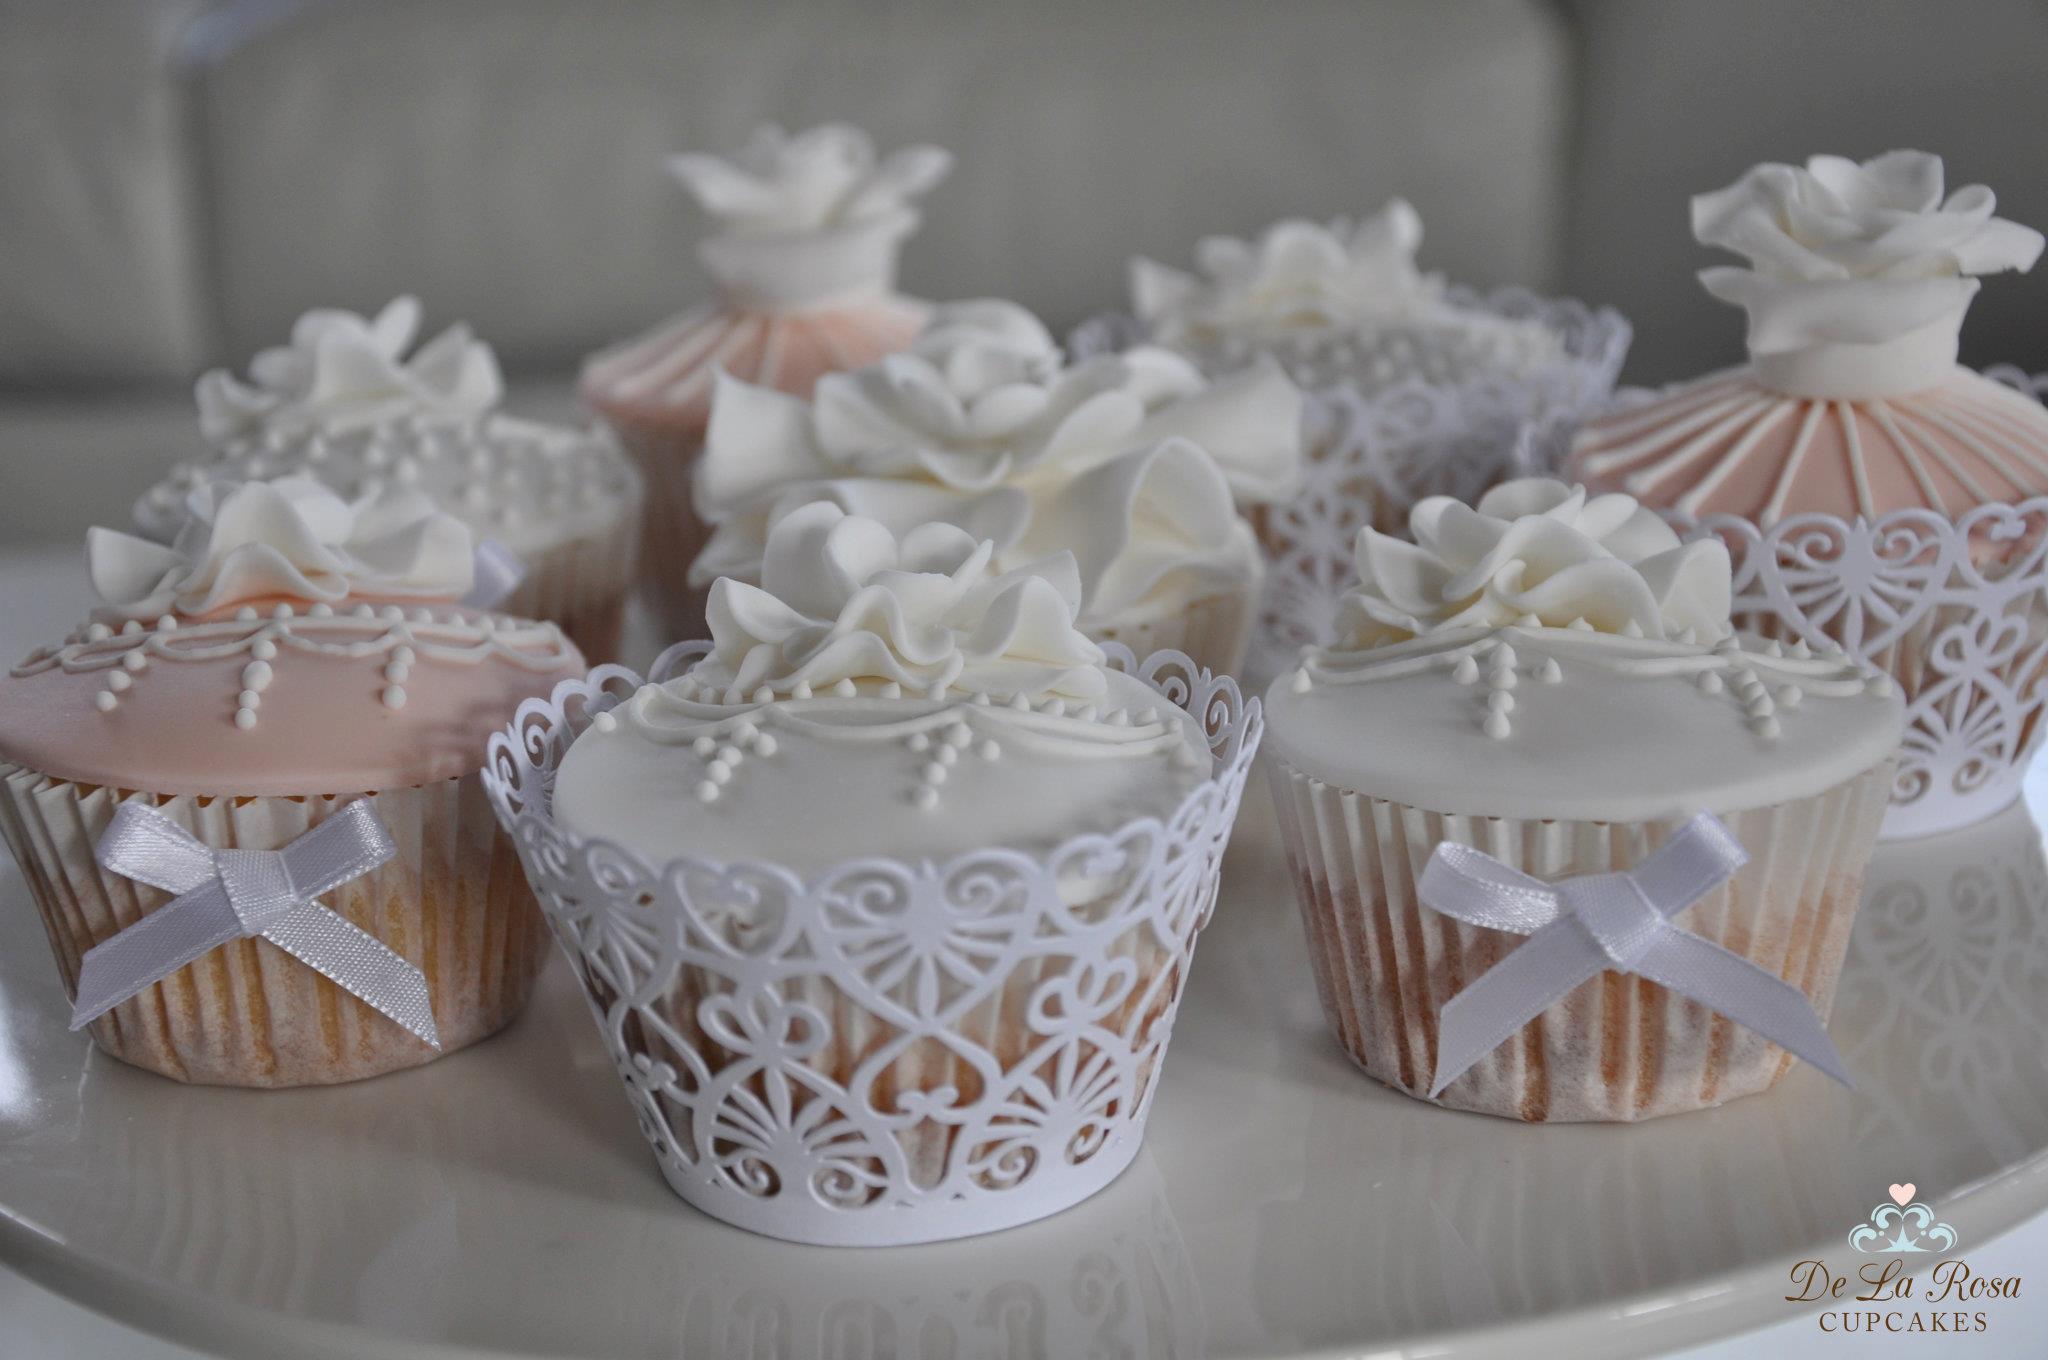 Vintage Cupcake Wedding Cake